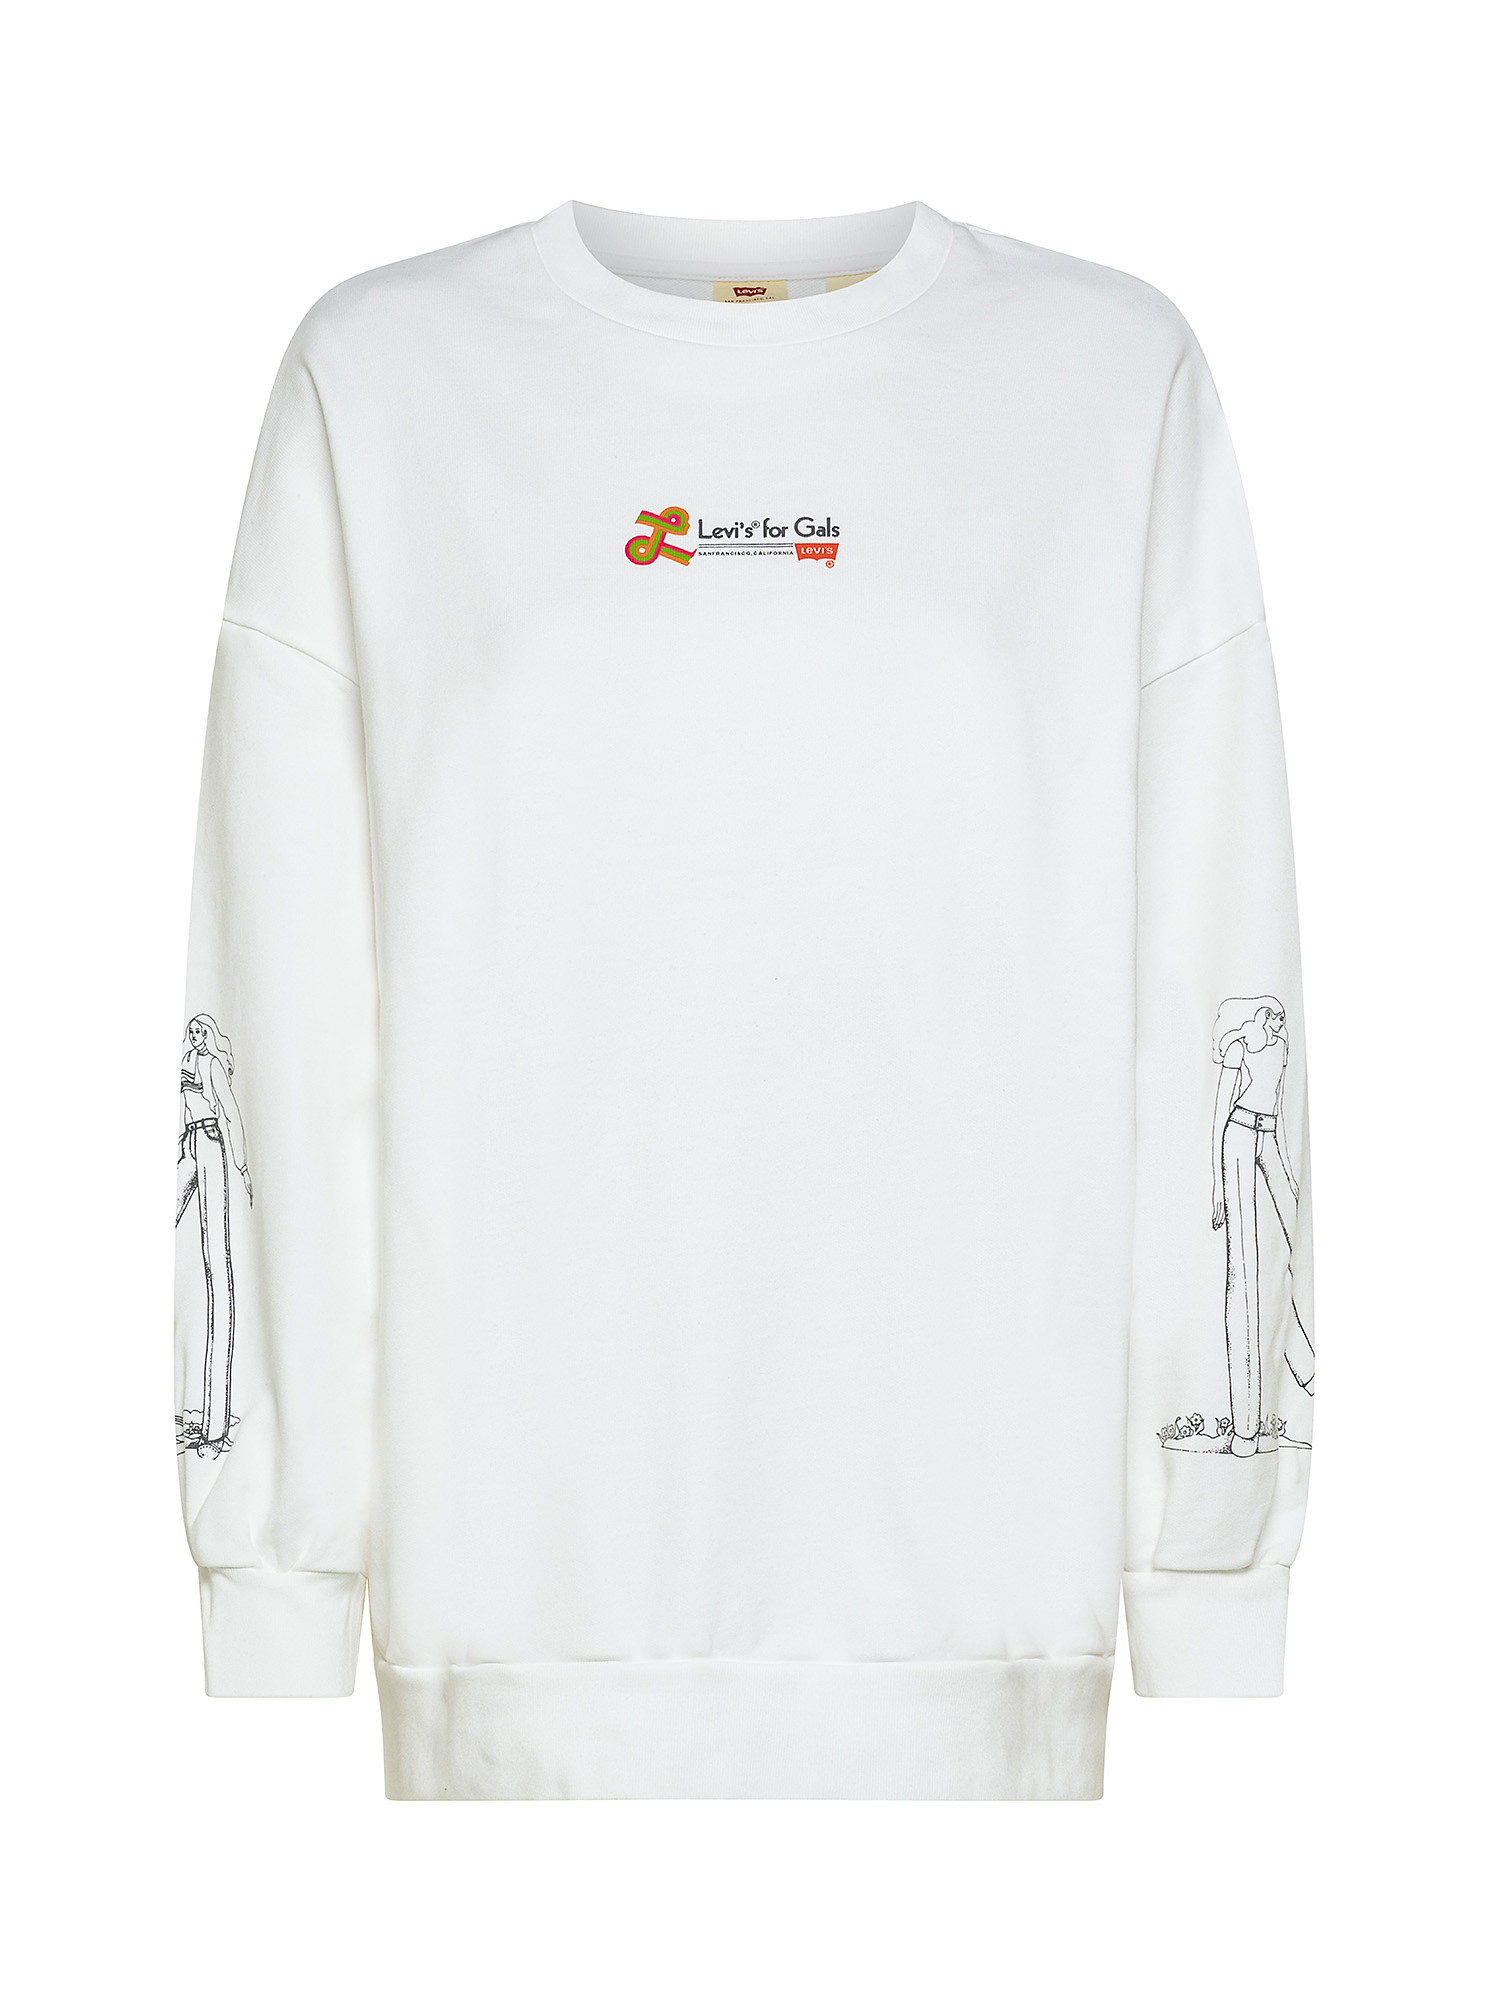 Prism printed crewneck sweatshirt, White, large image number 0